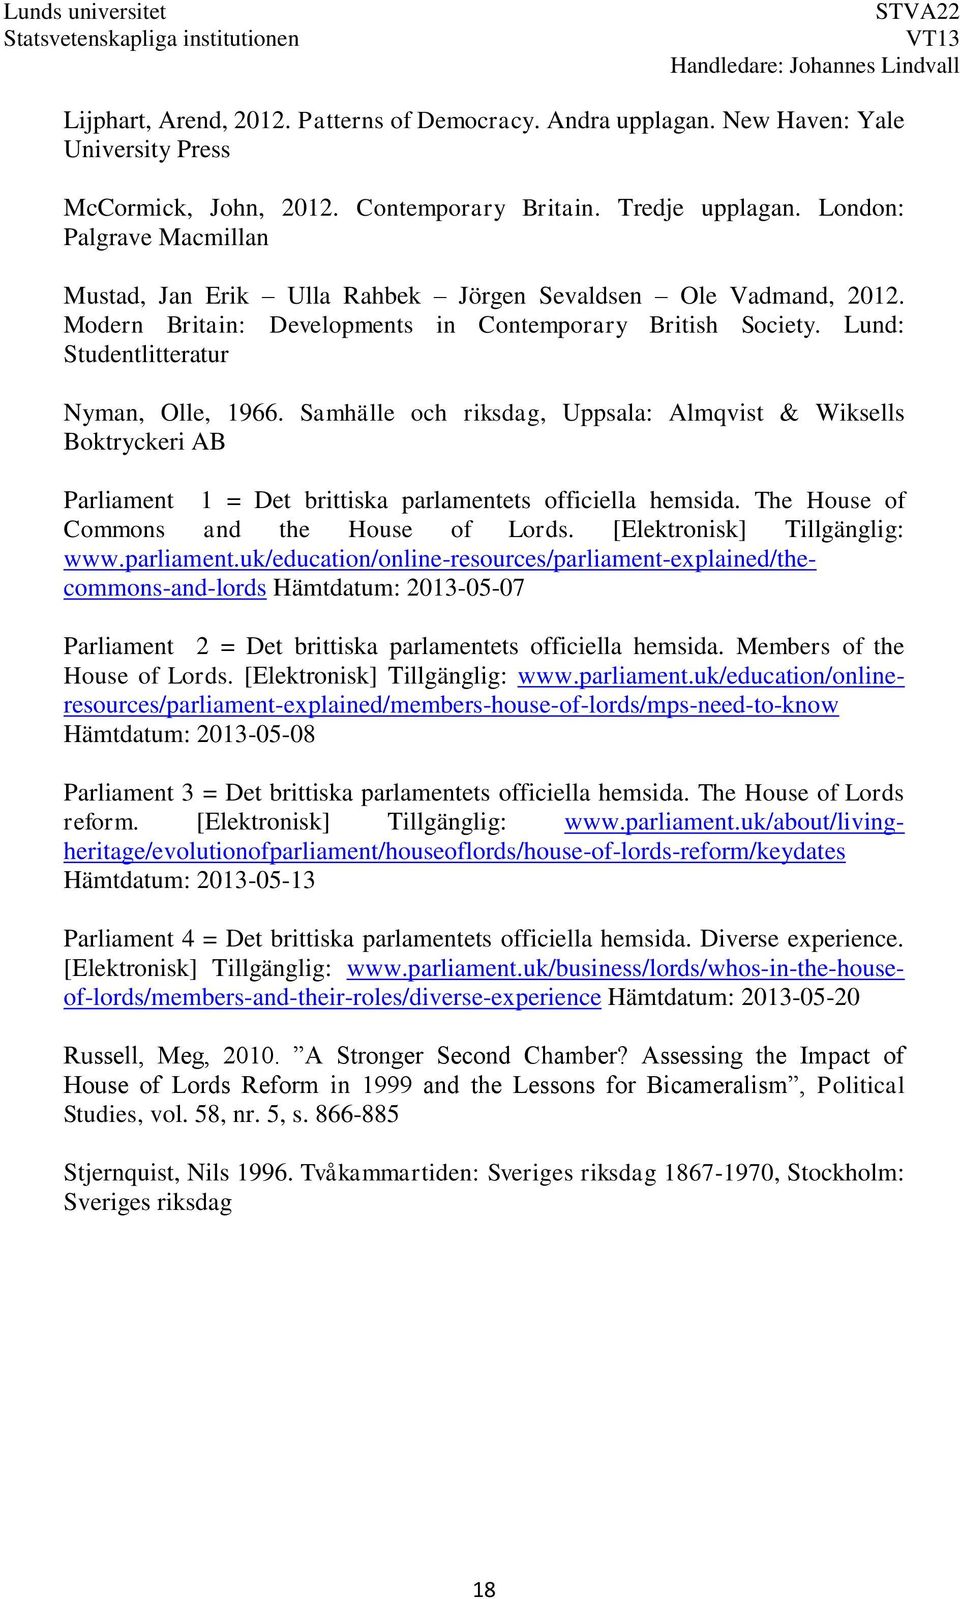 Samhälle och riksdag, Uppsala: Almqvist & Wiksells Boktryckeri AB Parliament 1 = Det brittiska parlamentets officiella hemsida. The House of Commons and the House of Lords.